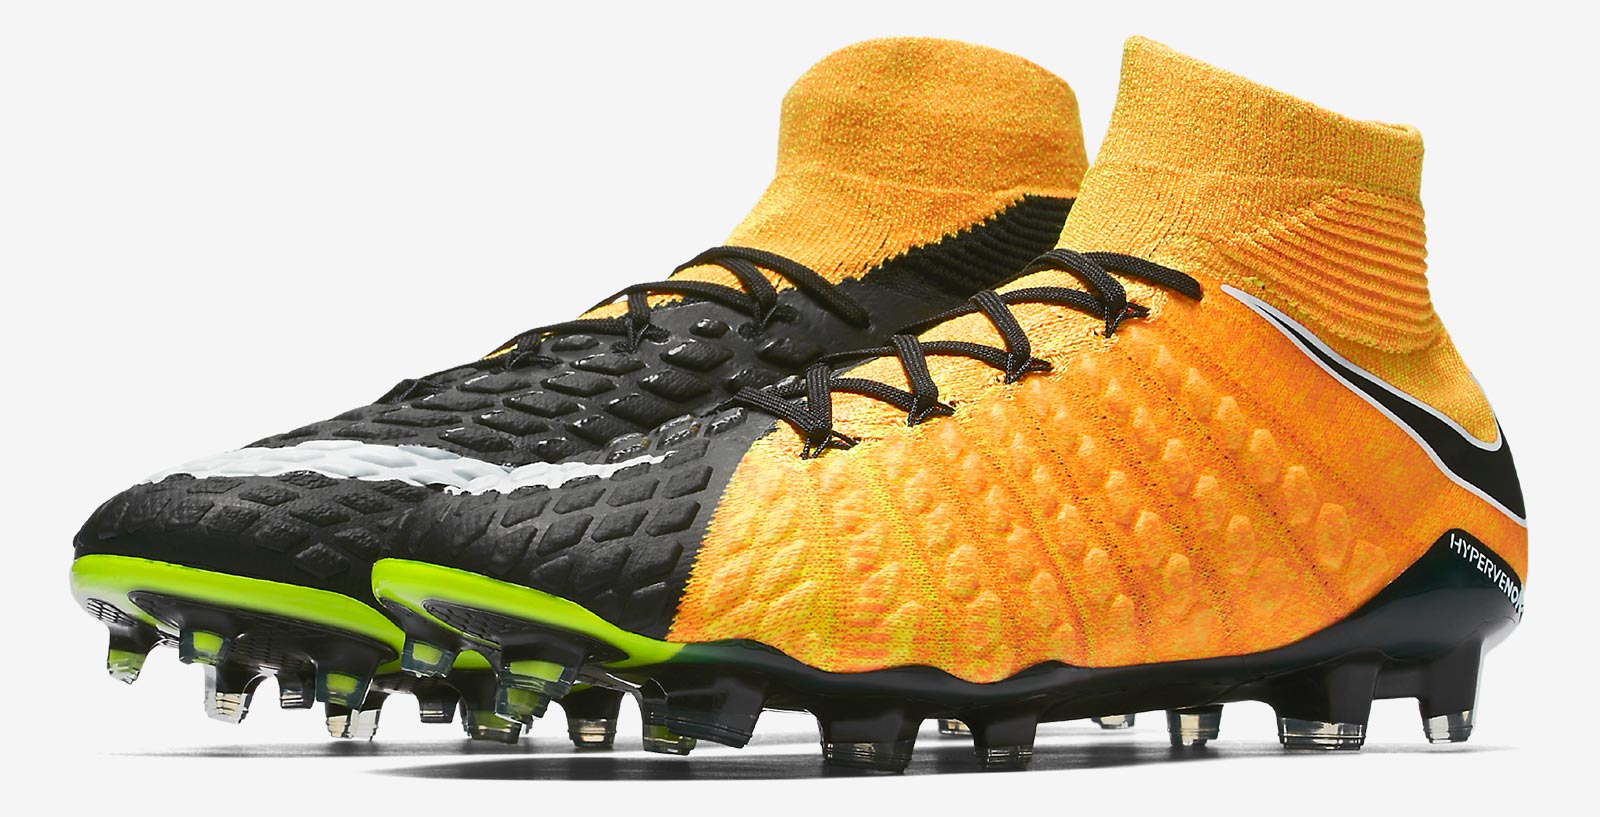 noot Eerlijkheid bijeenkomst Oranje zwarte Nike Hypervenom Phantom III voetbalschoenen -  Voetbal-schoenen.eu